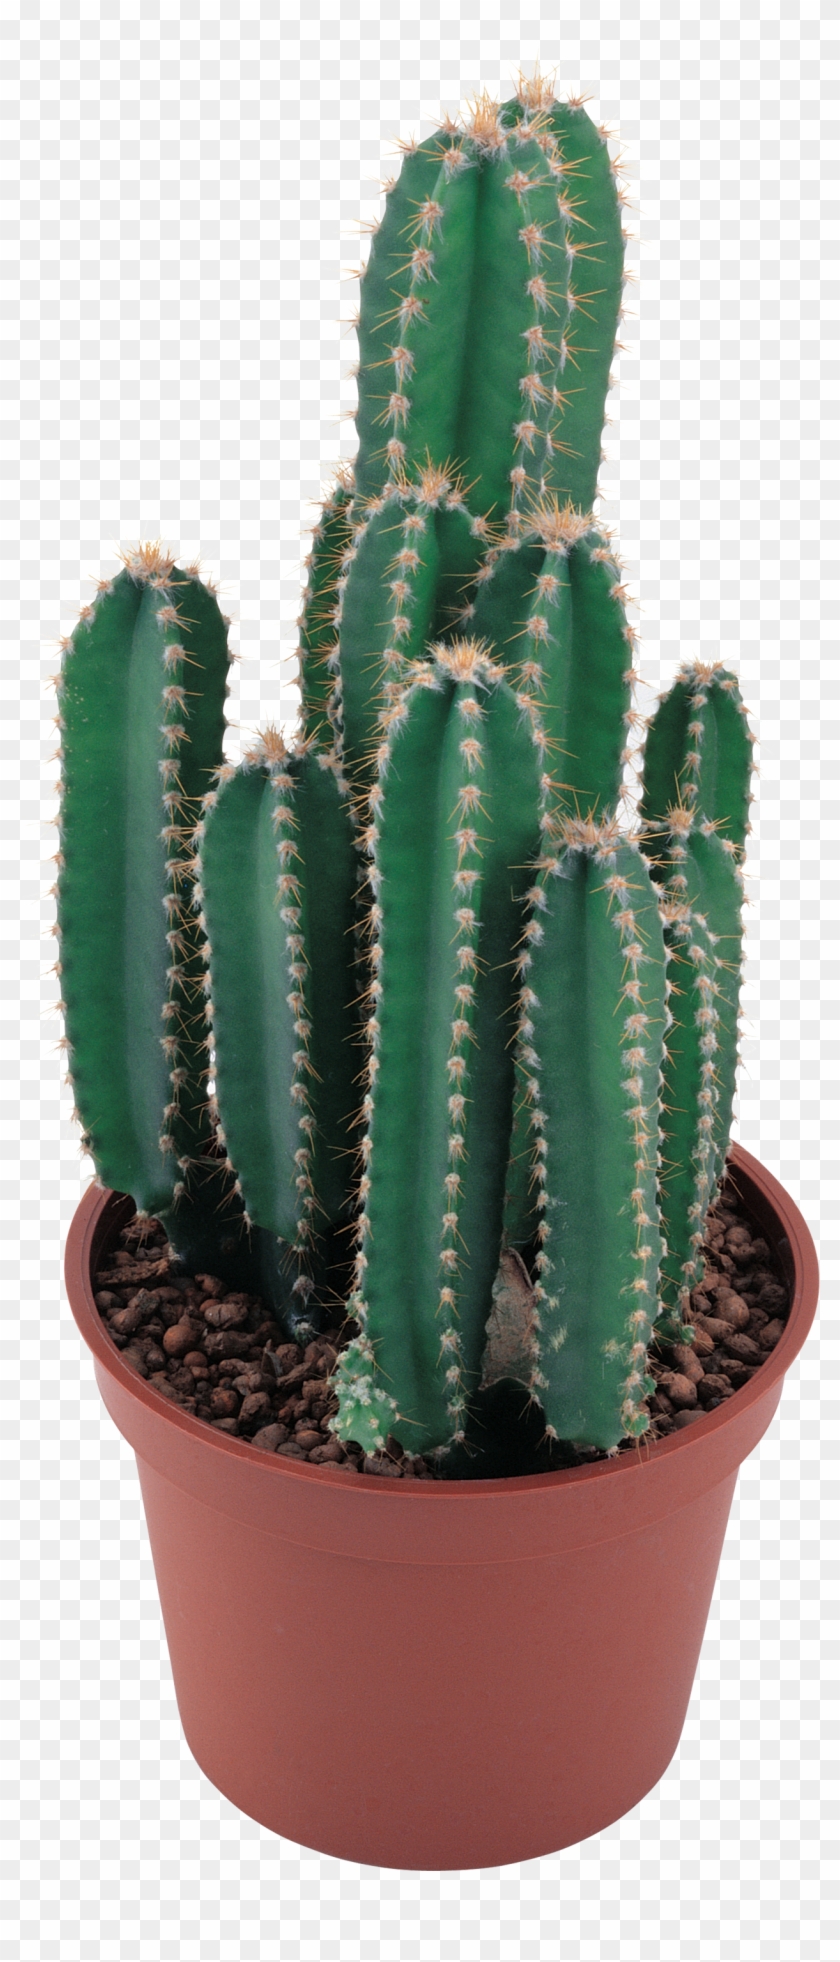 Cactus Pesquisa Google - Cactus Png #274257